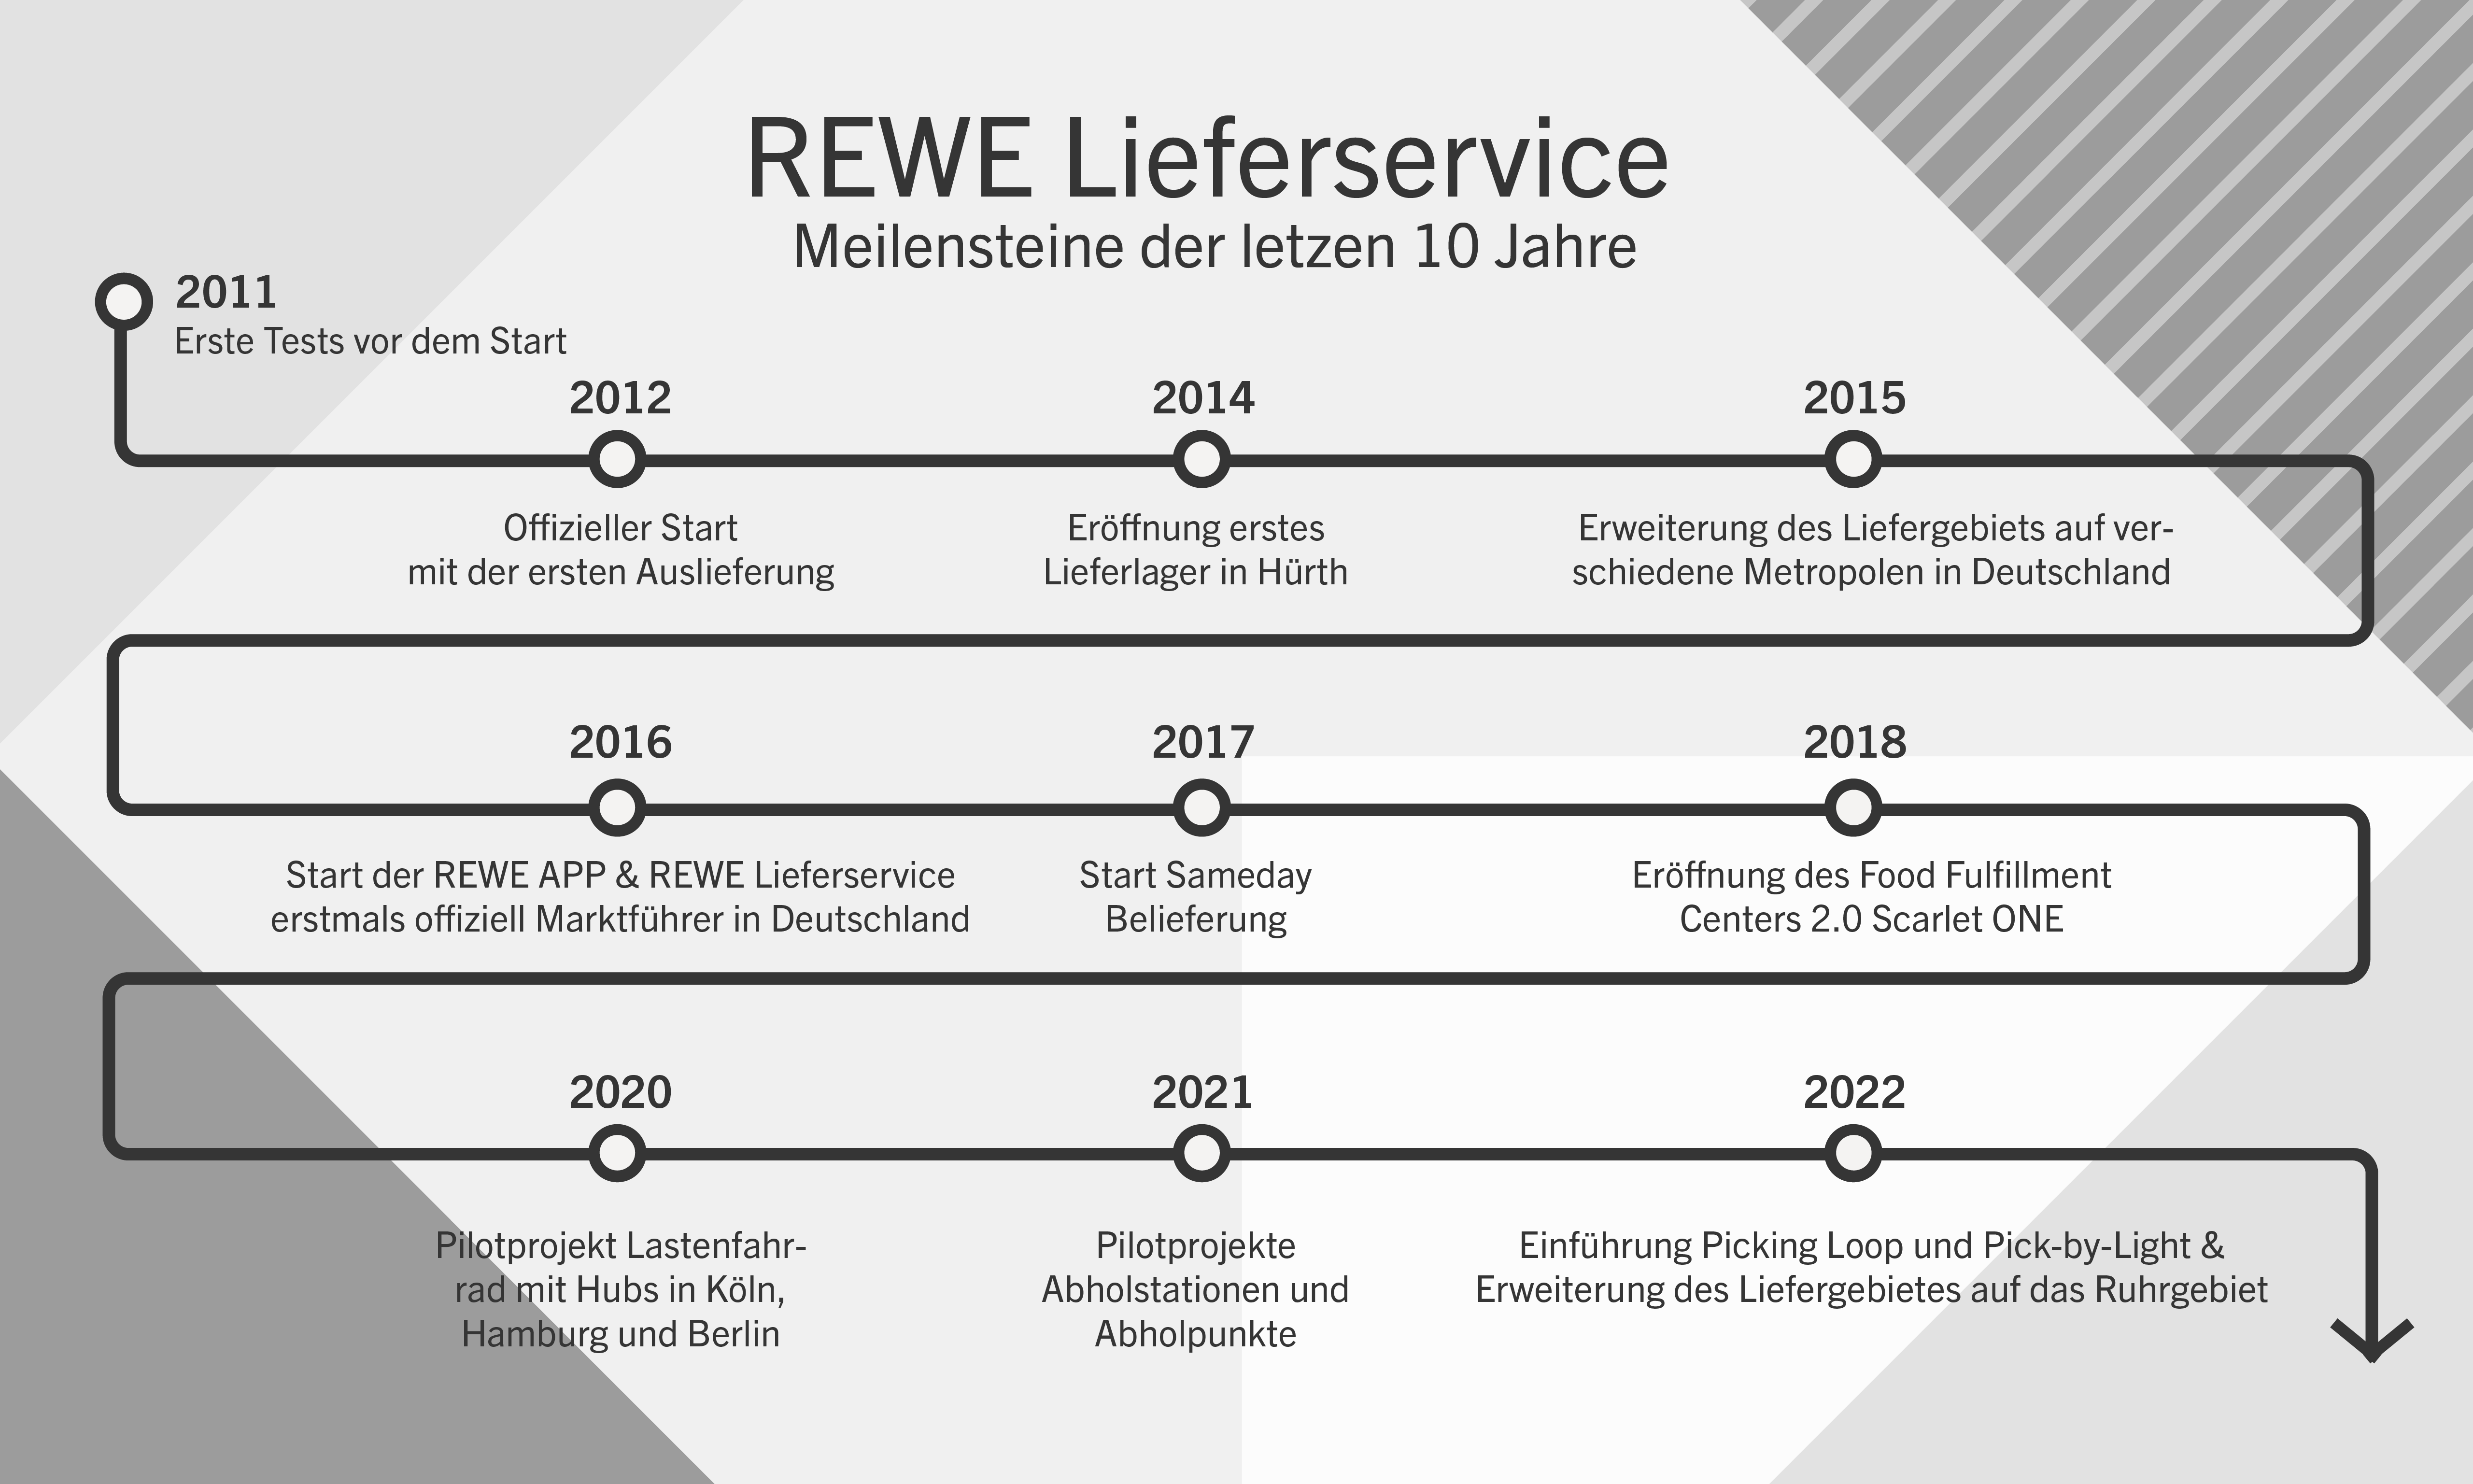 Grafische Darstellung der Meilensteine des REWE Lieferservice in den letzten 10 Jahren.